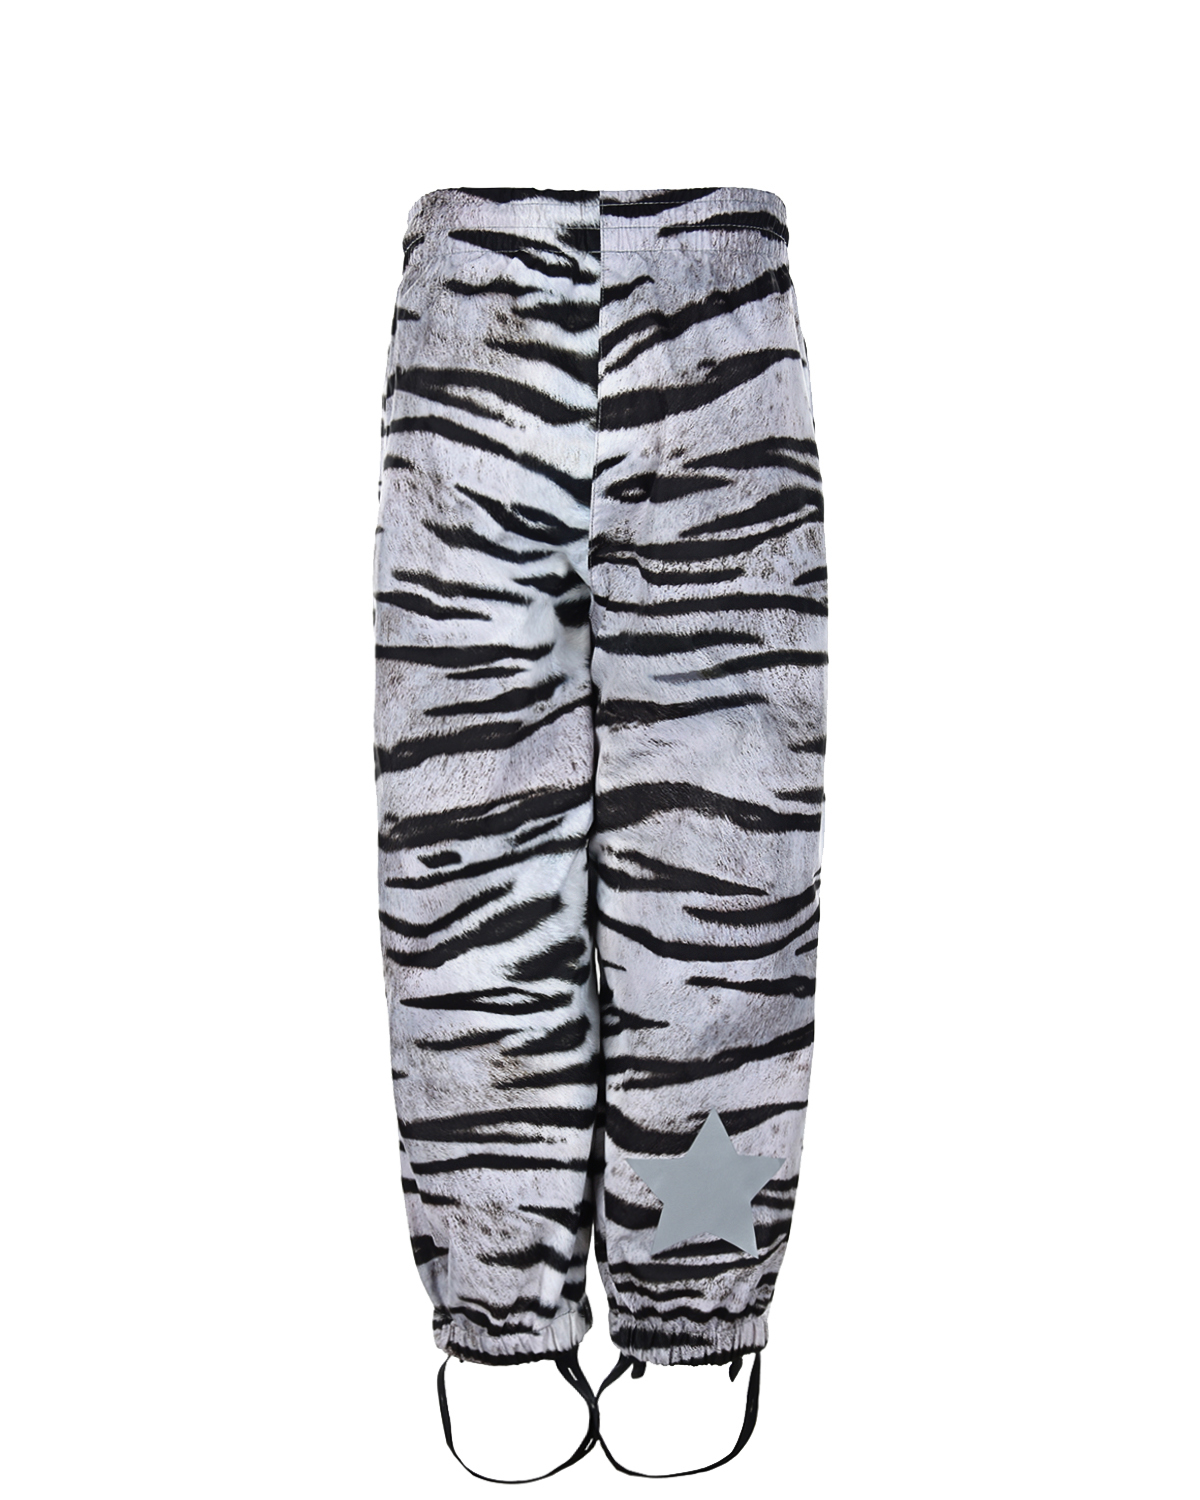 Мембранные брюки Waits "Tiger White" Molo детские, размер 98, цвет мультиколор - фото 2